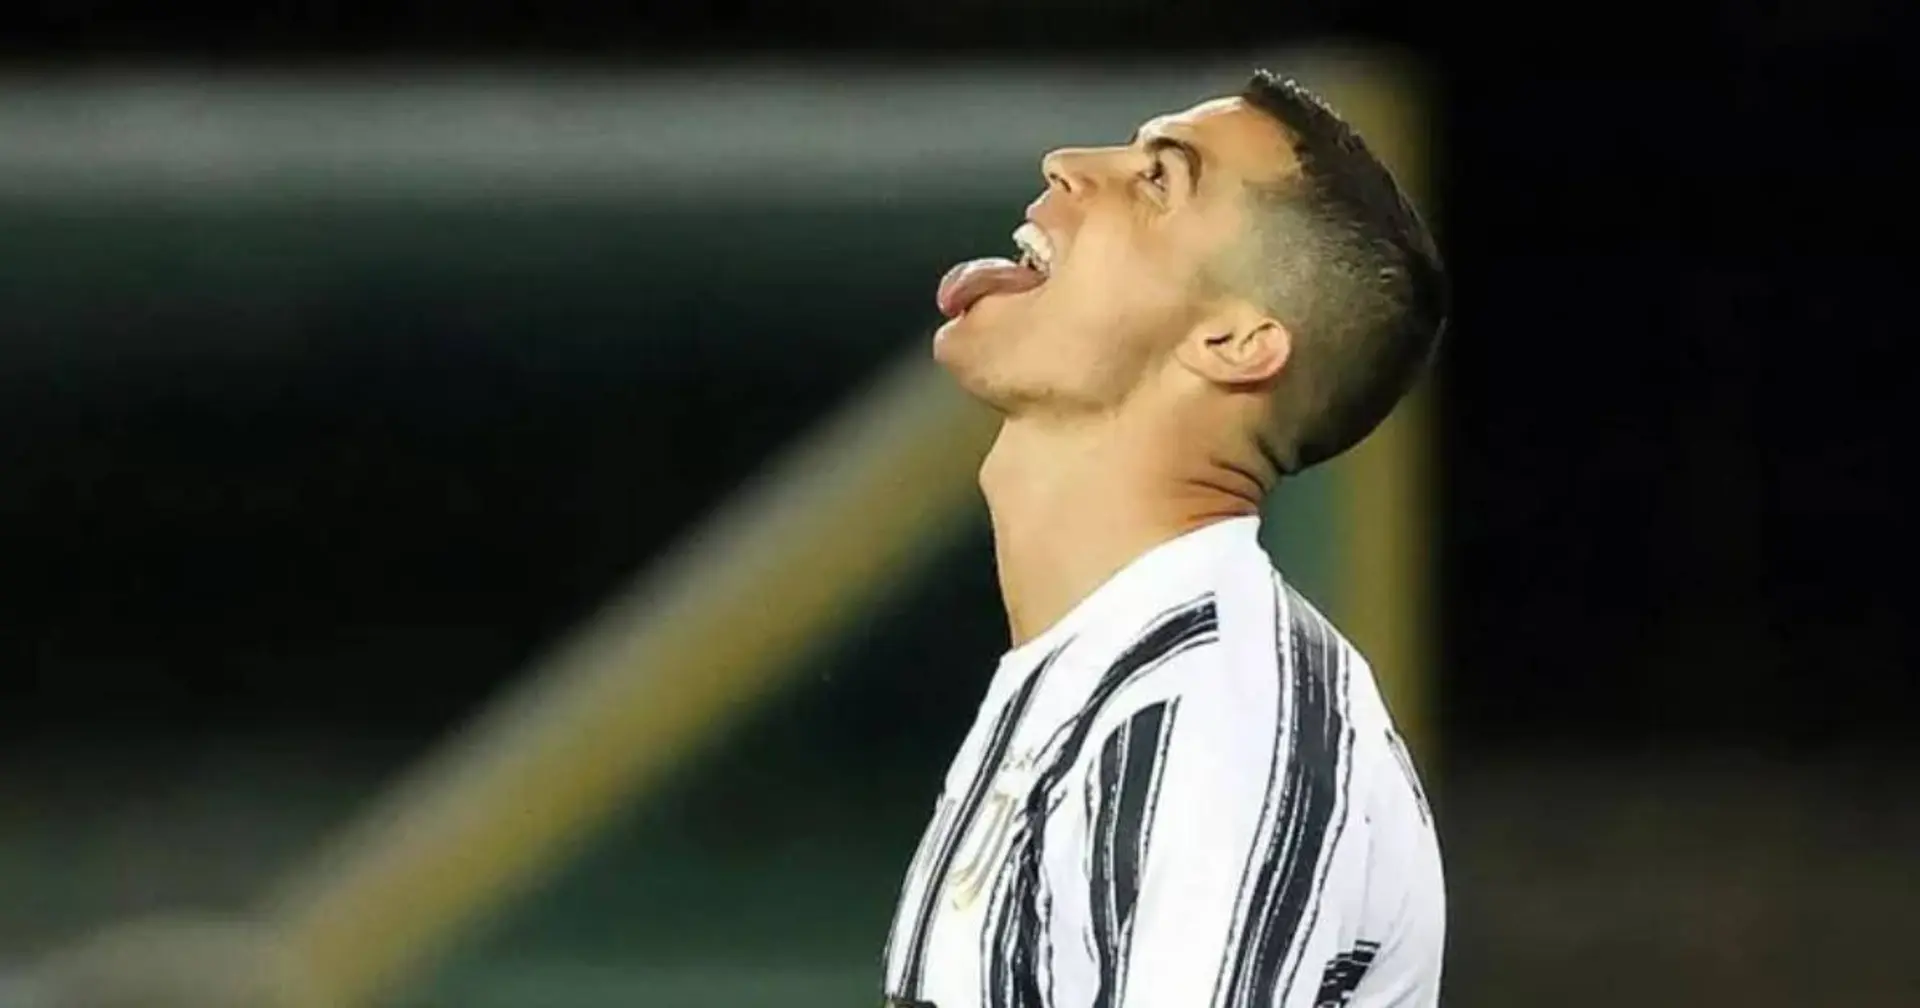 La Juventus no venderá a Cristiano Ronaldo a ningún club: Fabrizio Romano (fiabilidad: 5 estrellas)